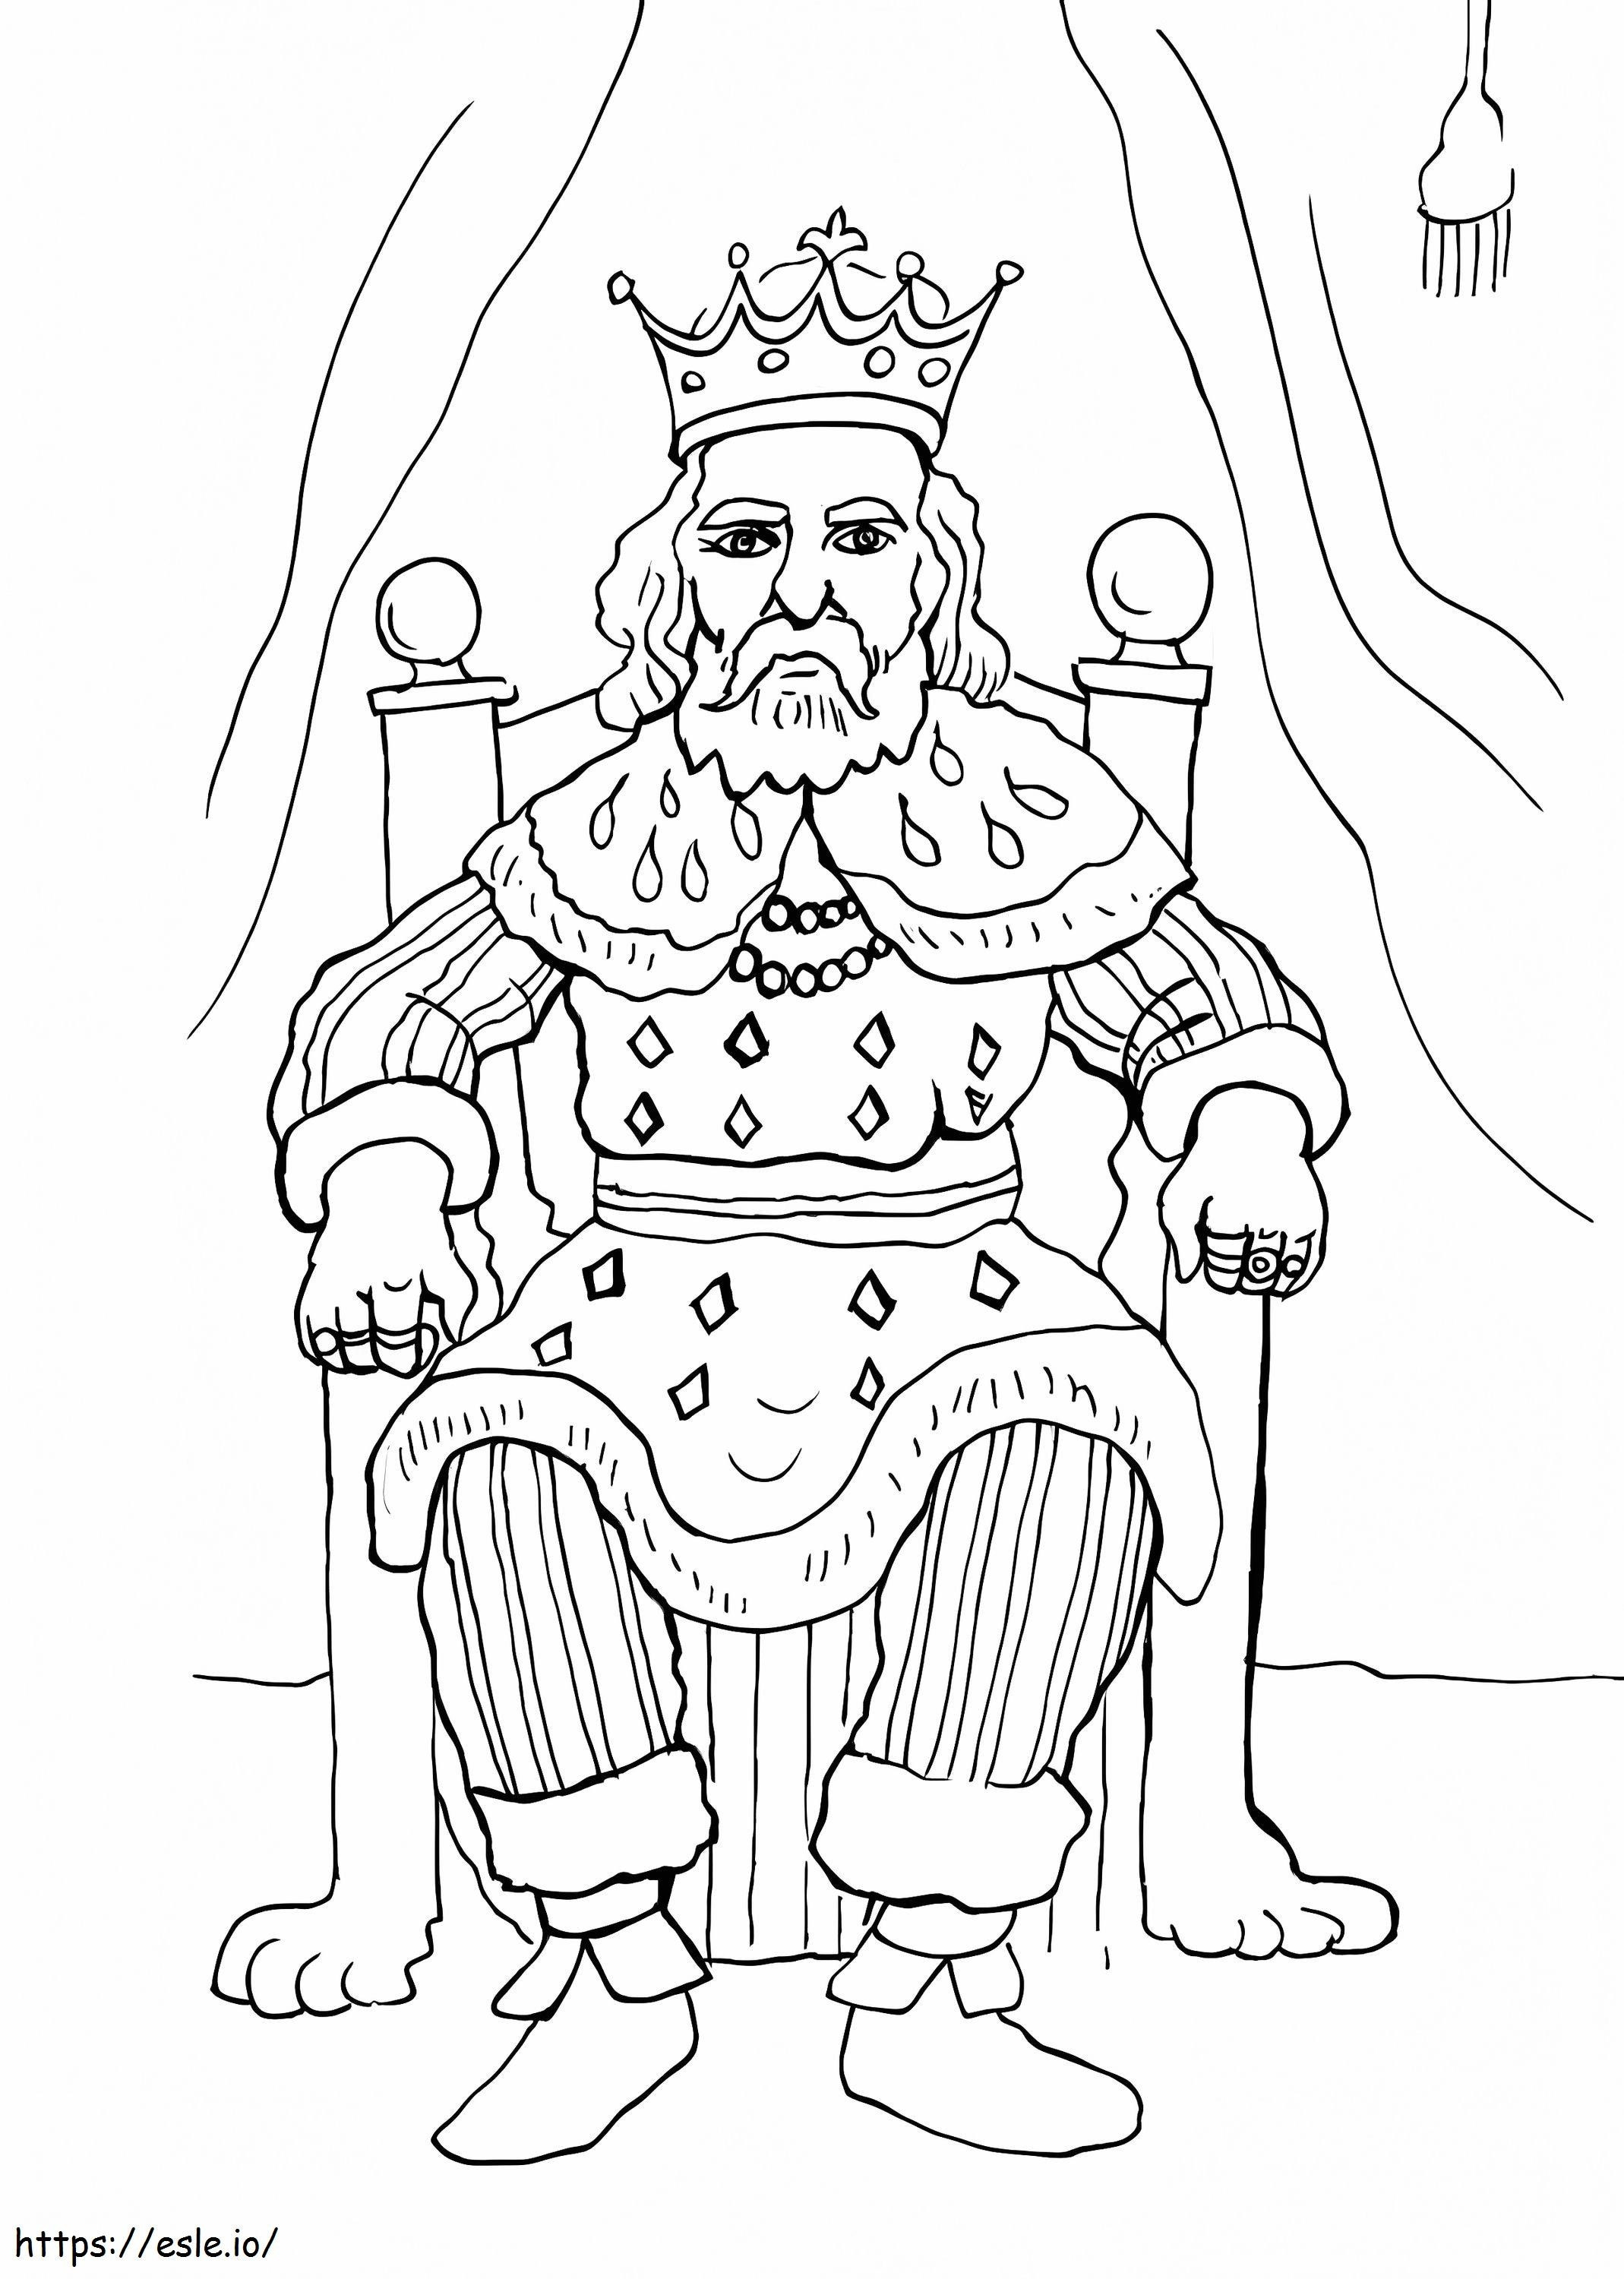 Siedzi stary król kolorowanka